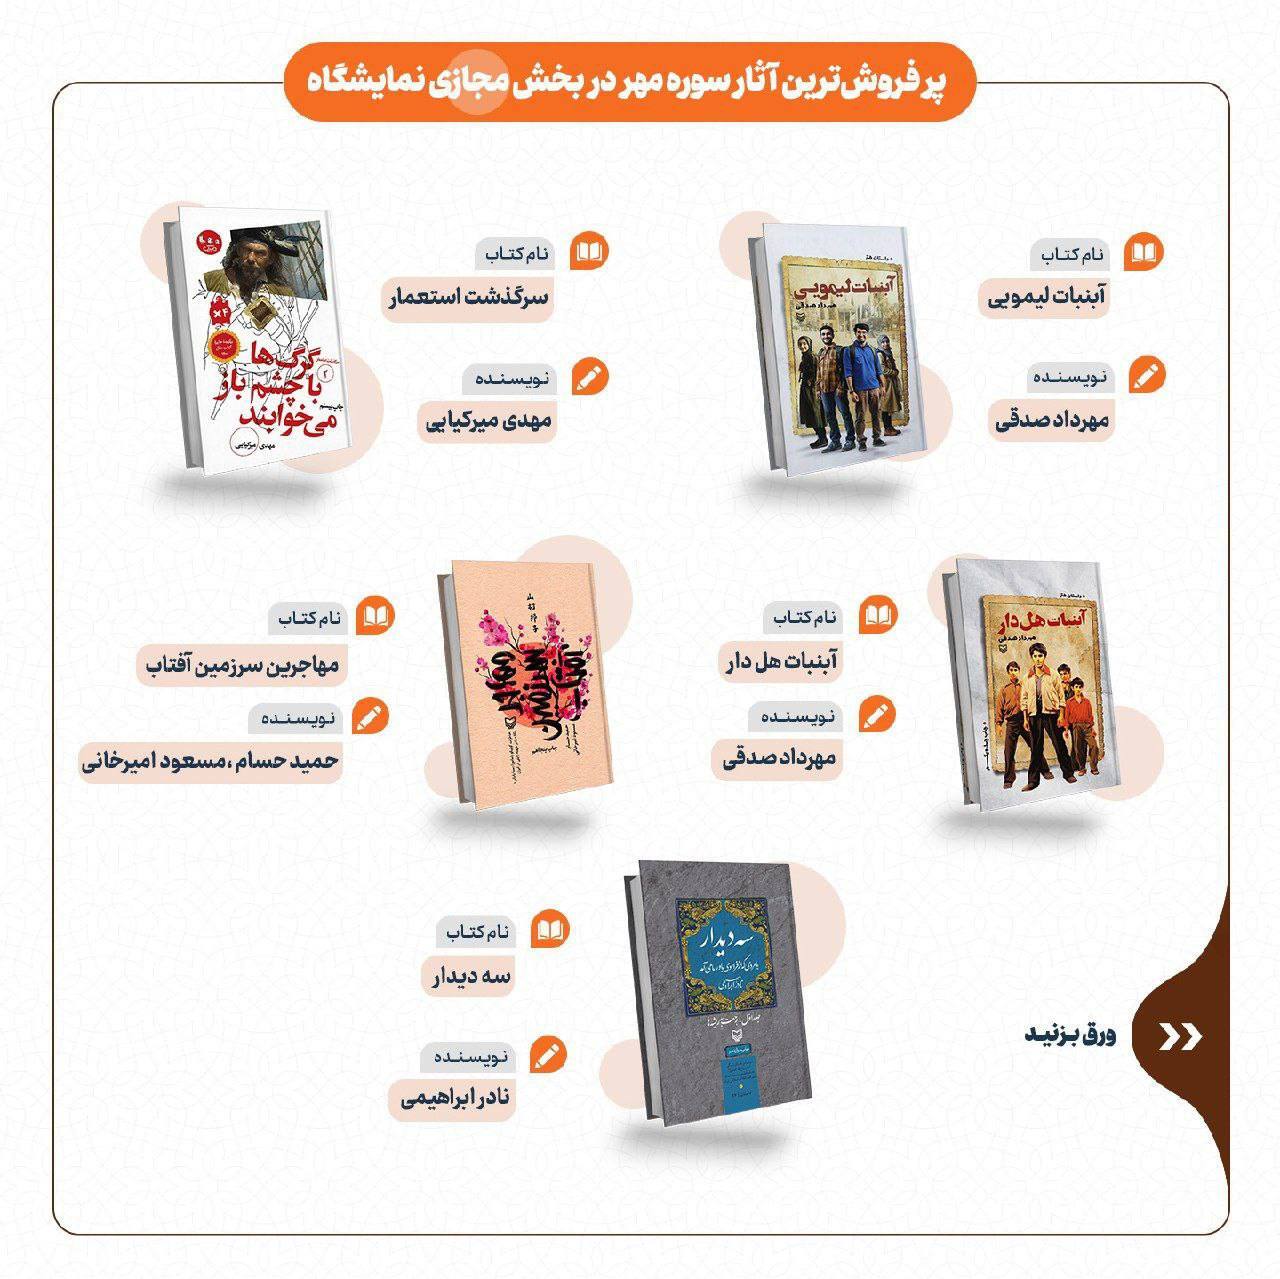 فروش ۹۰ میلیاردی ناشران خانواده سازمان تبلیغات اسلامی در نمایشگاه کتاب تهران